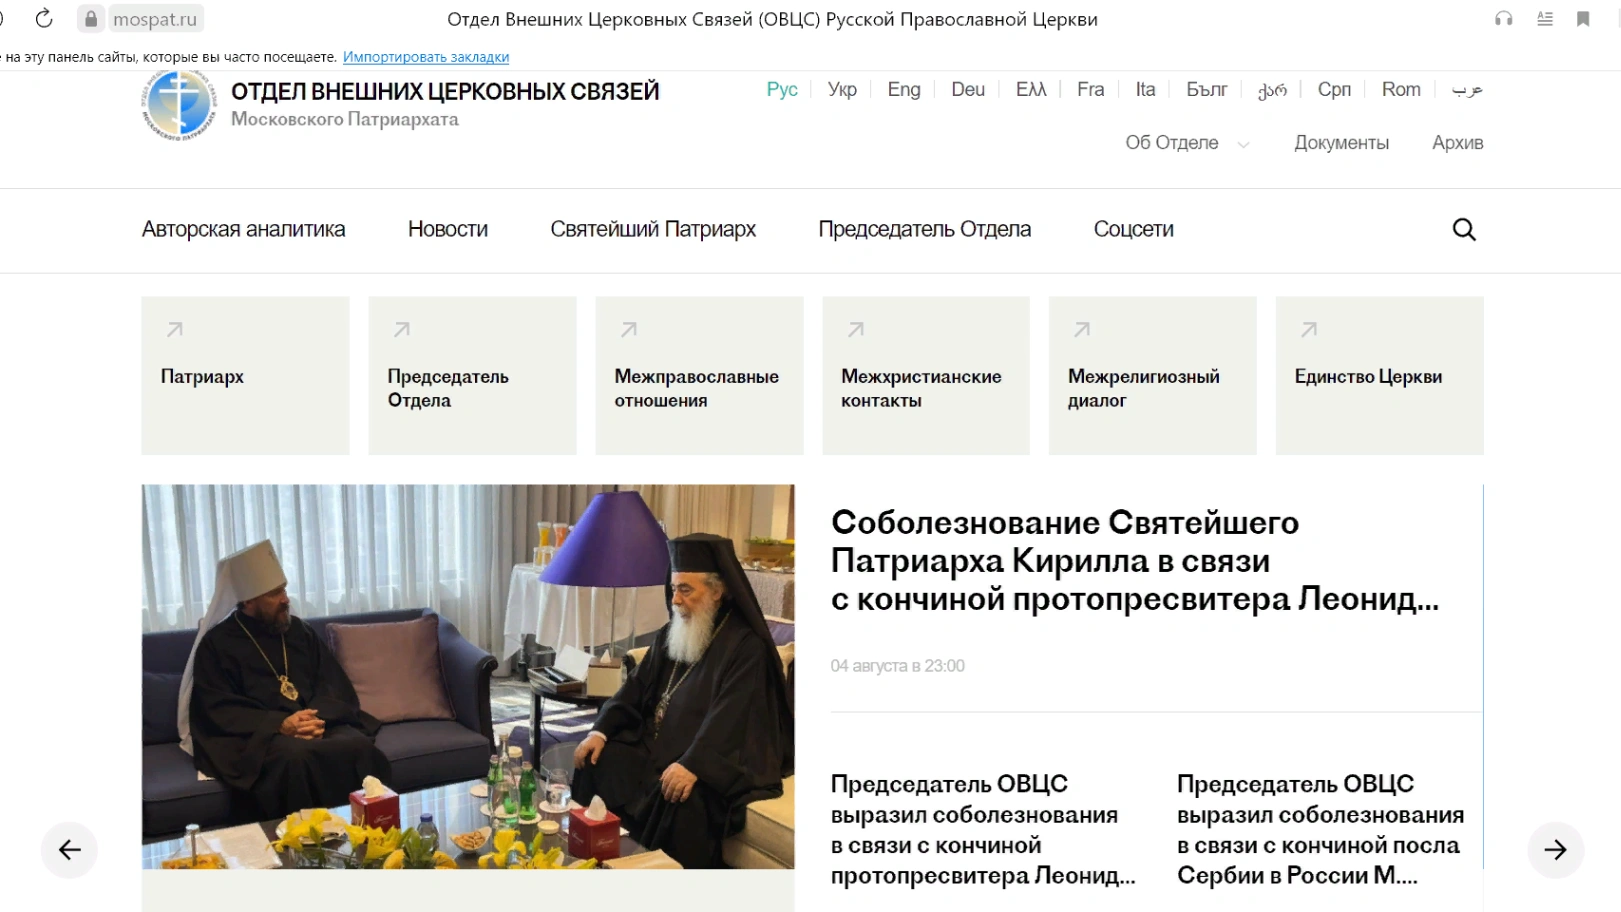 Rus Ortodoks Kilisesi'nin dış faaliyetlerini kapsayan bir site oluşturmak